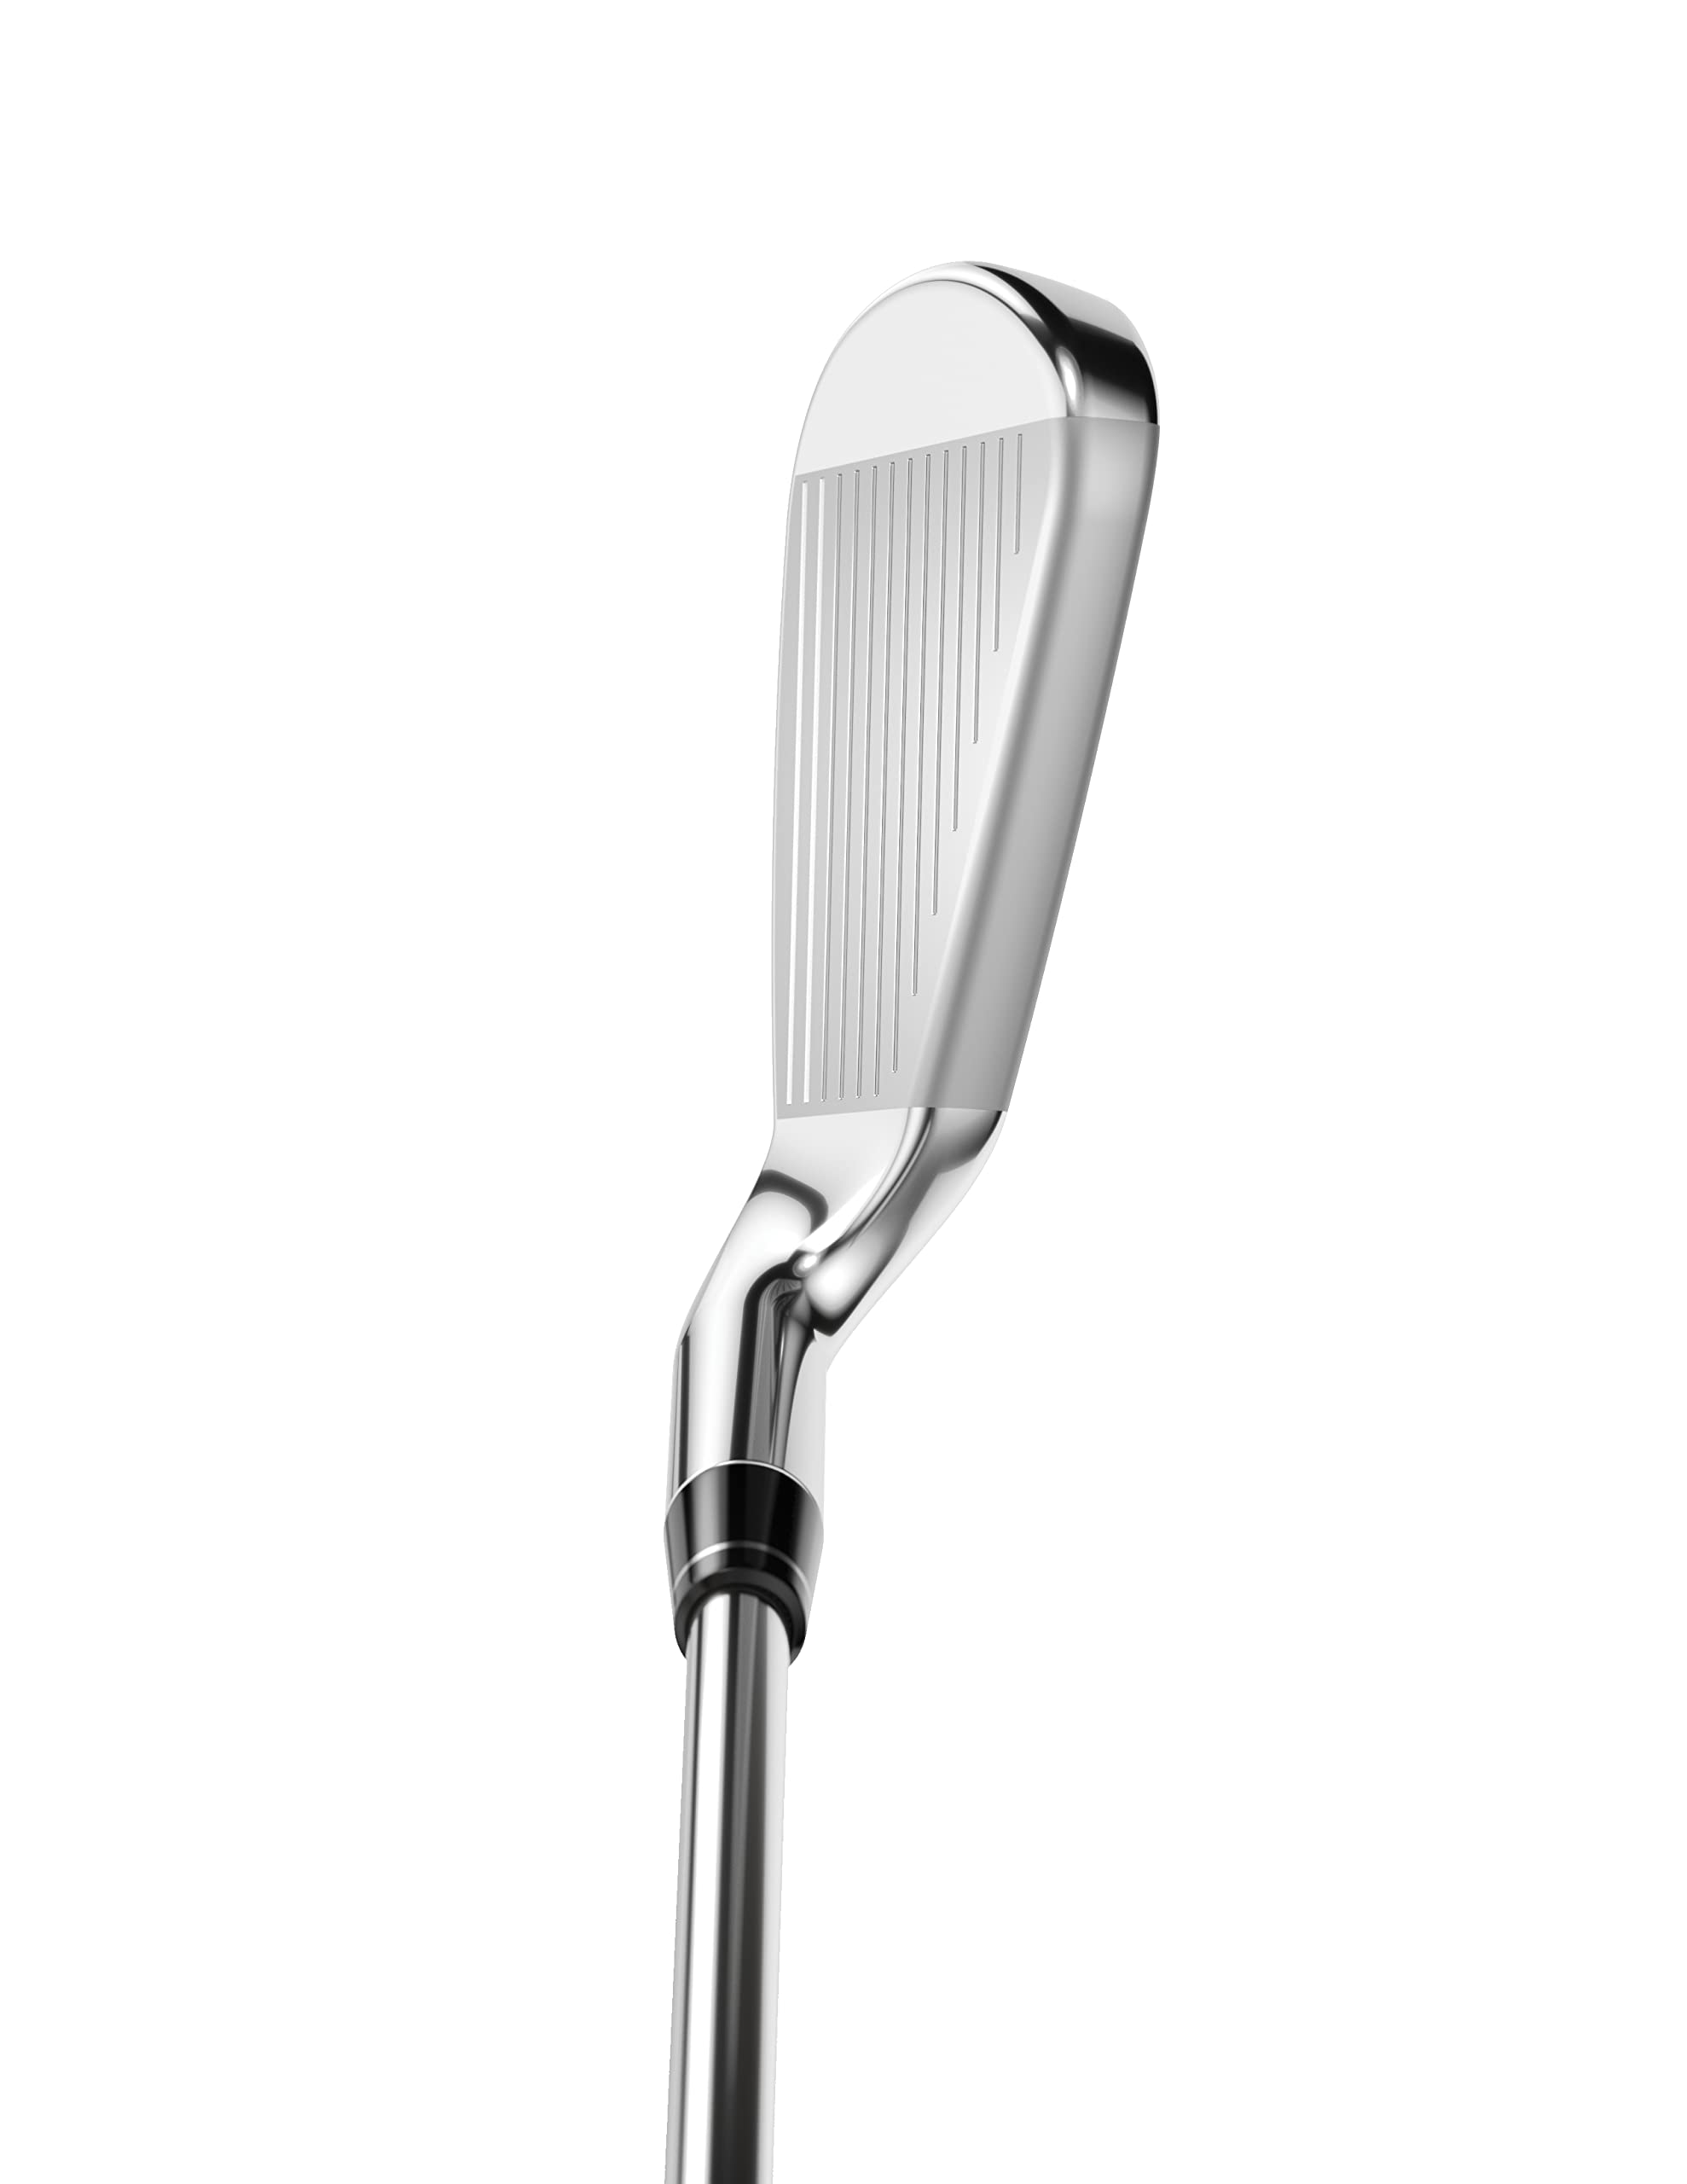 Callaway Golf Rogue ST MAX OS Individual Iron